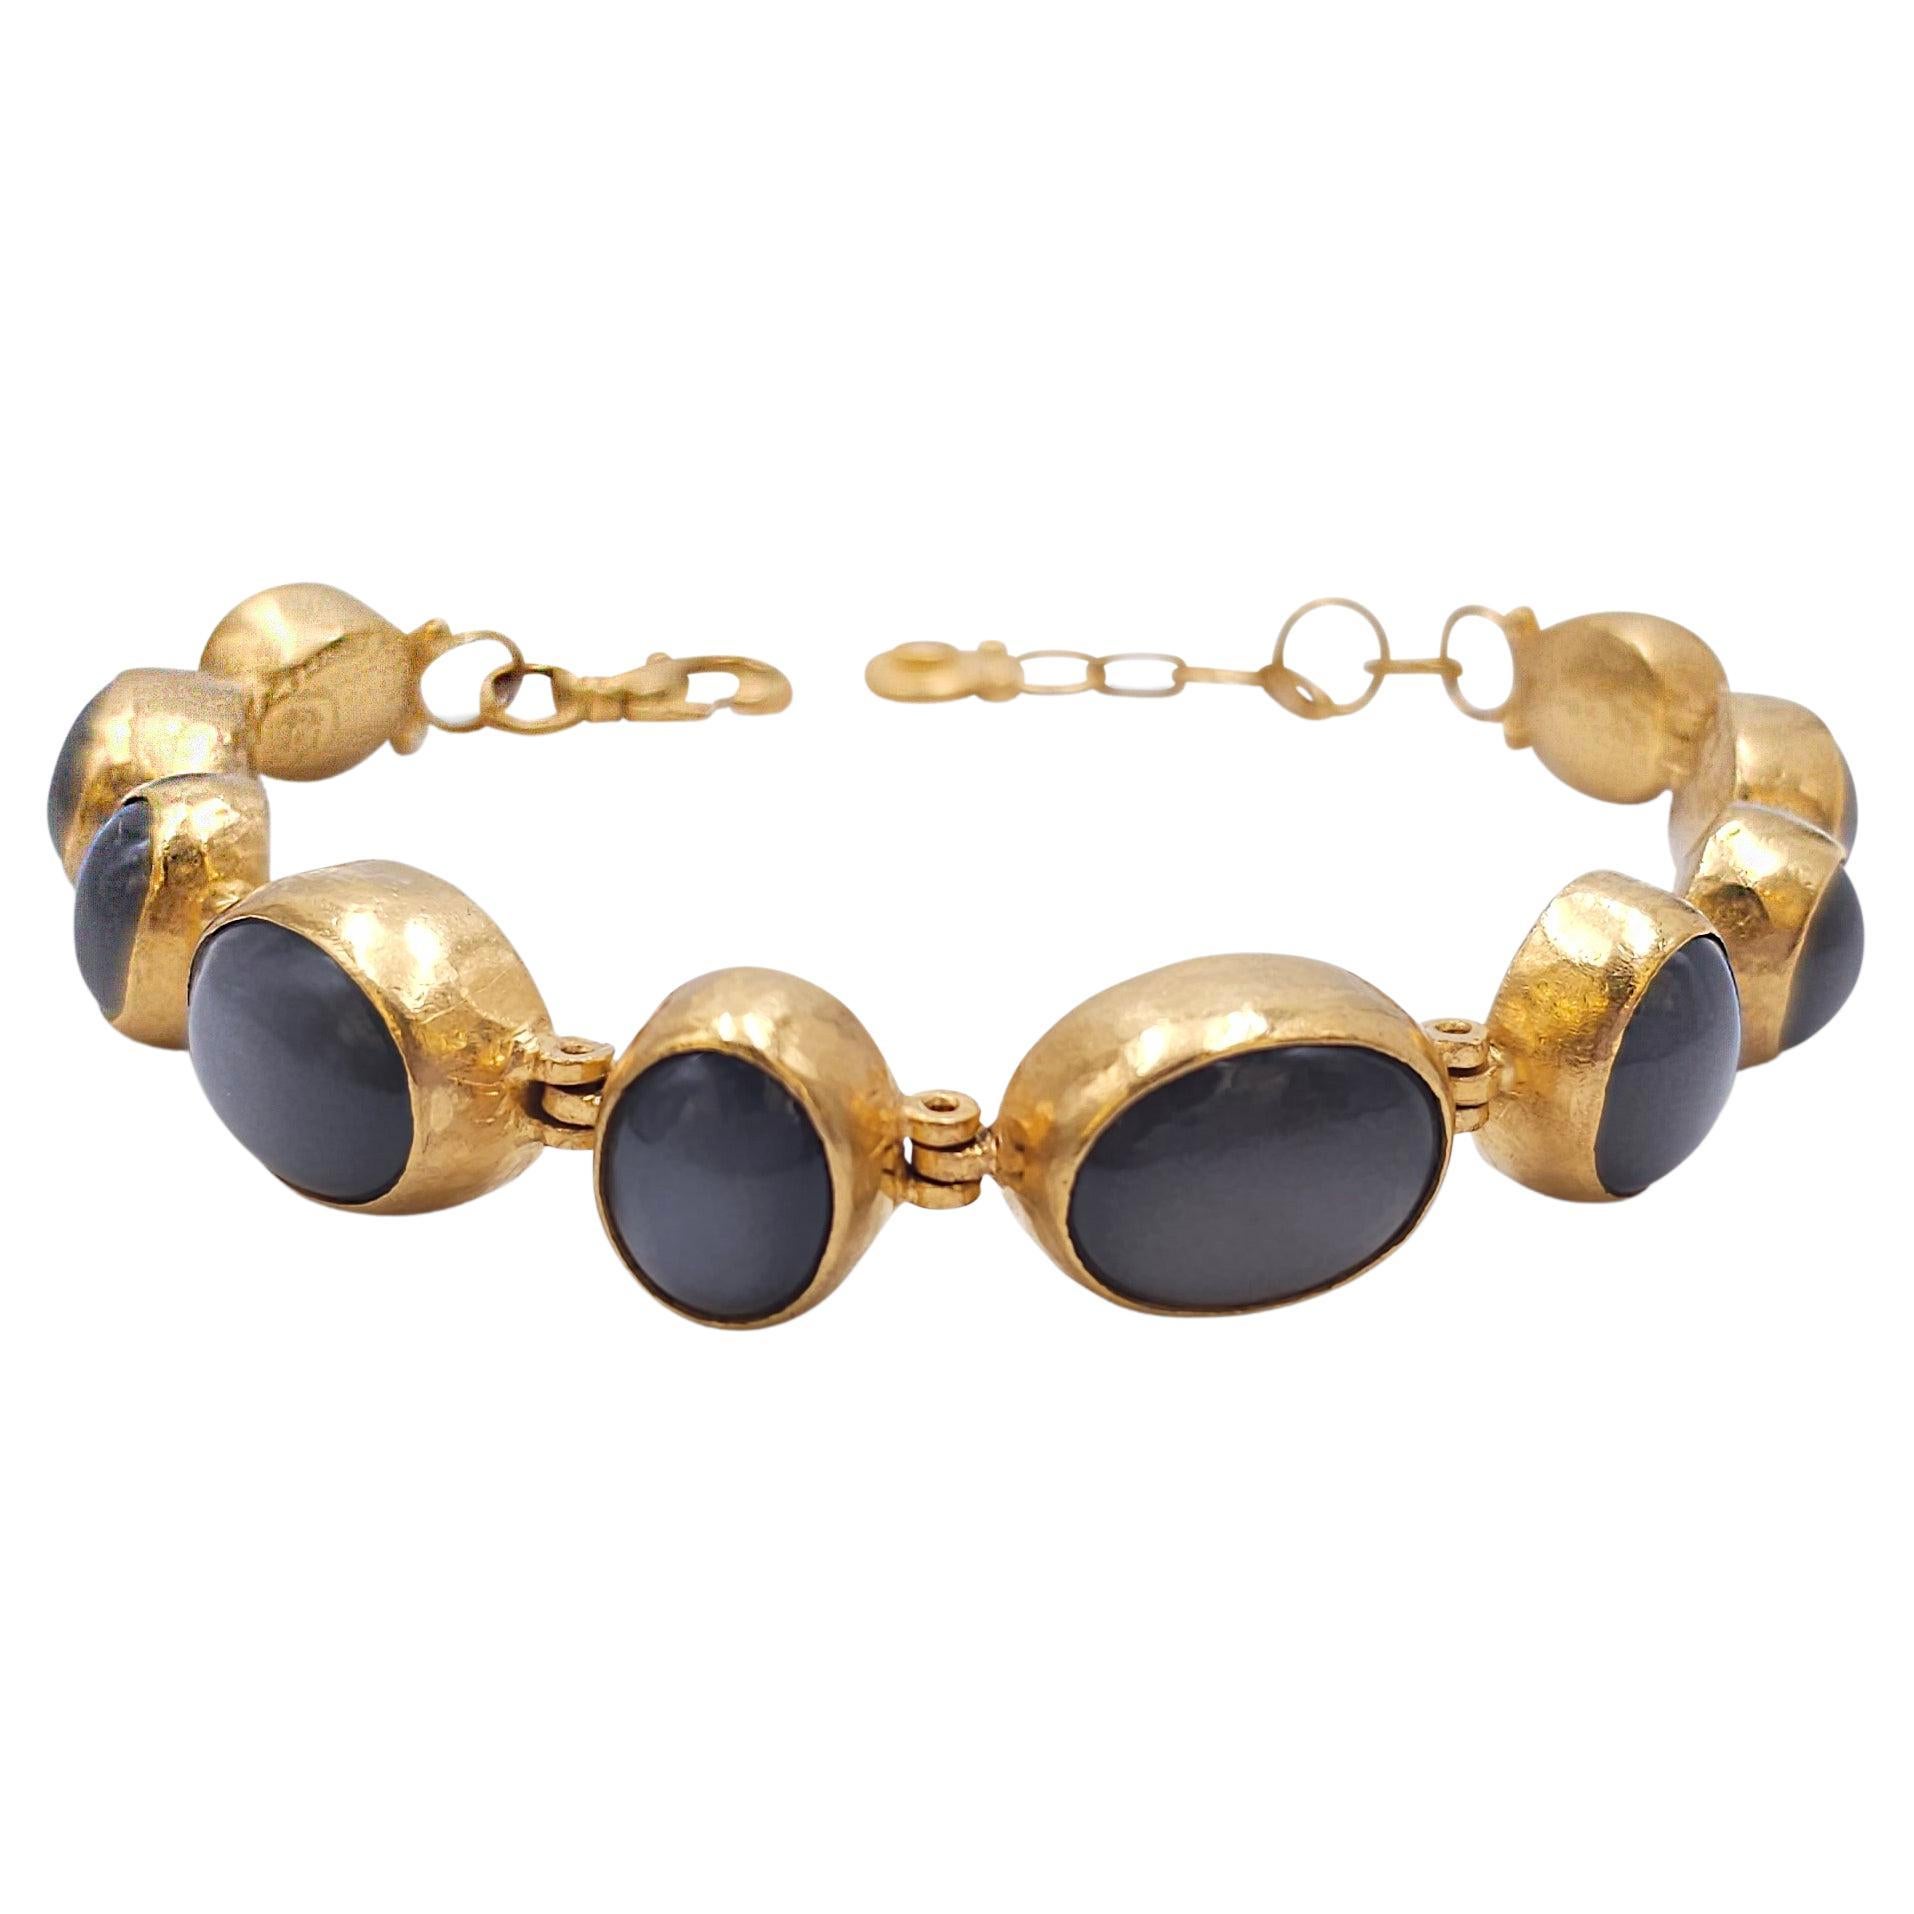 Gurhan 24 Karat Gold and Black Moonstone Bracelet